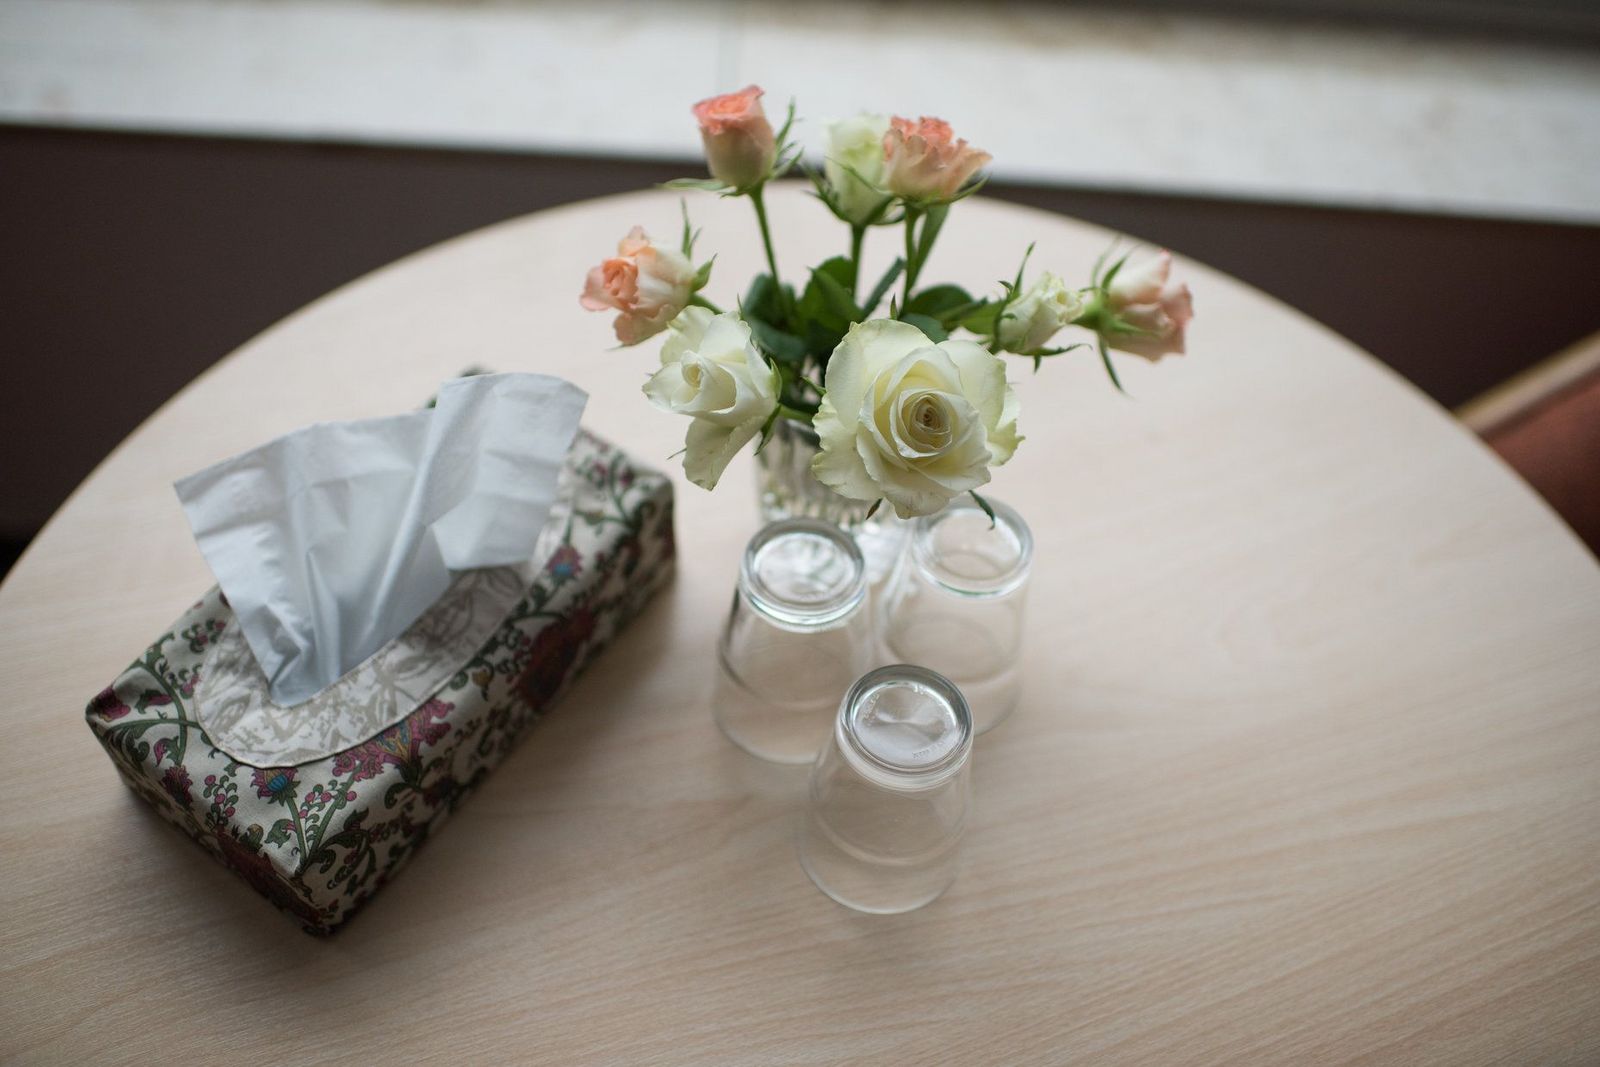 Hübsch dekorierter Tisch mit kleinem Blumenstrauß